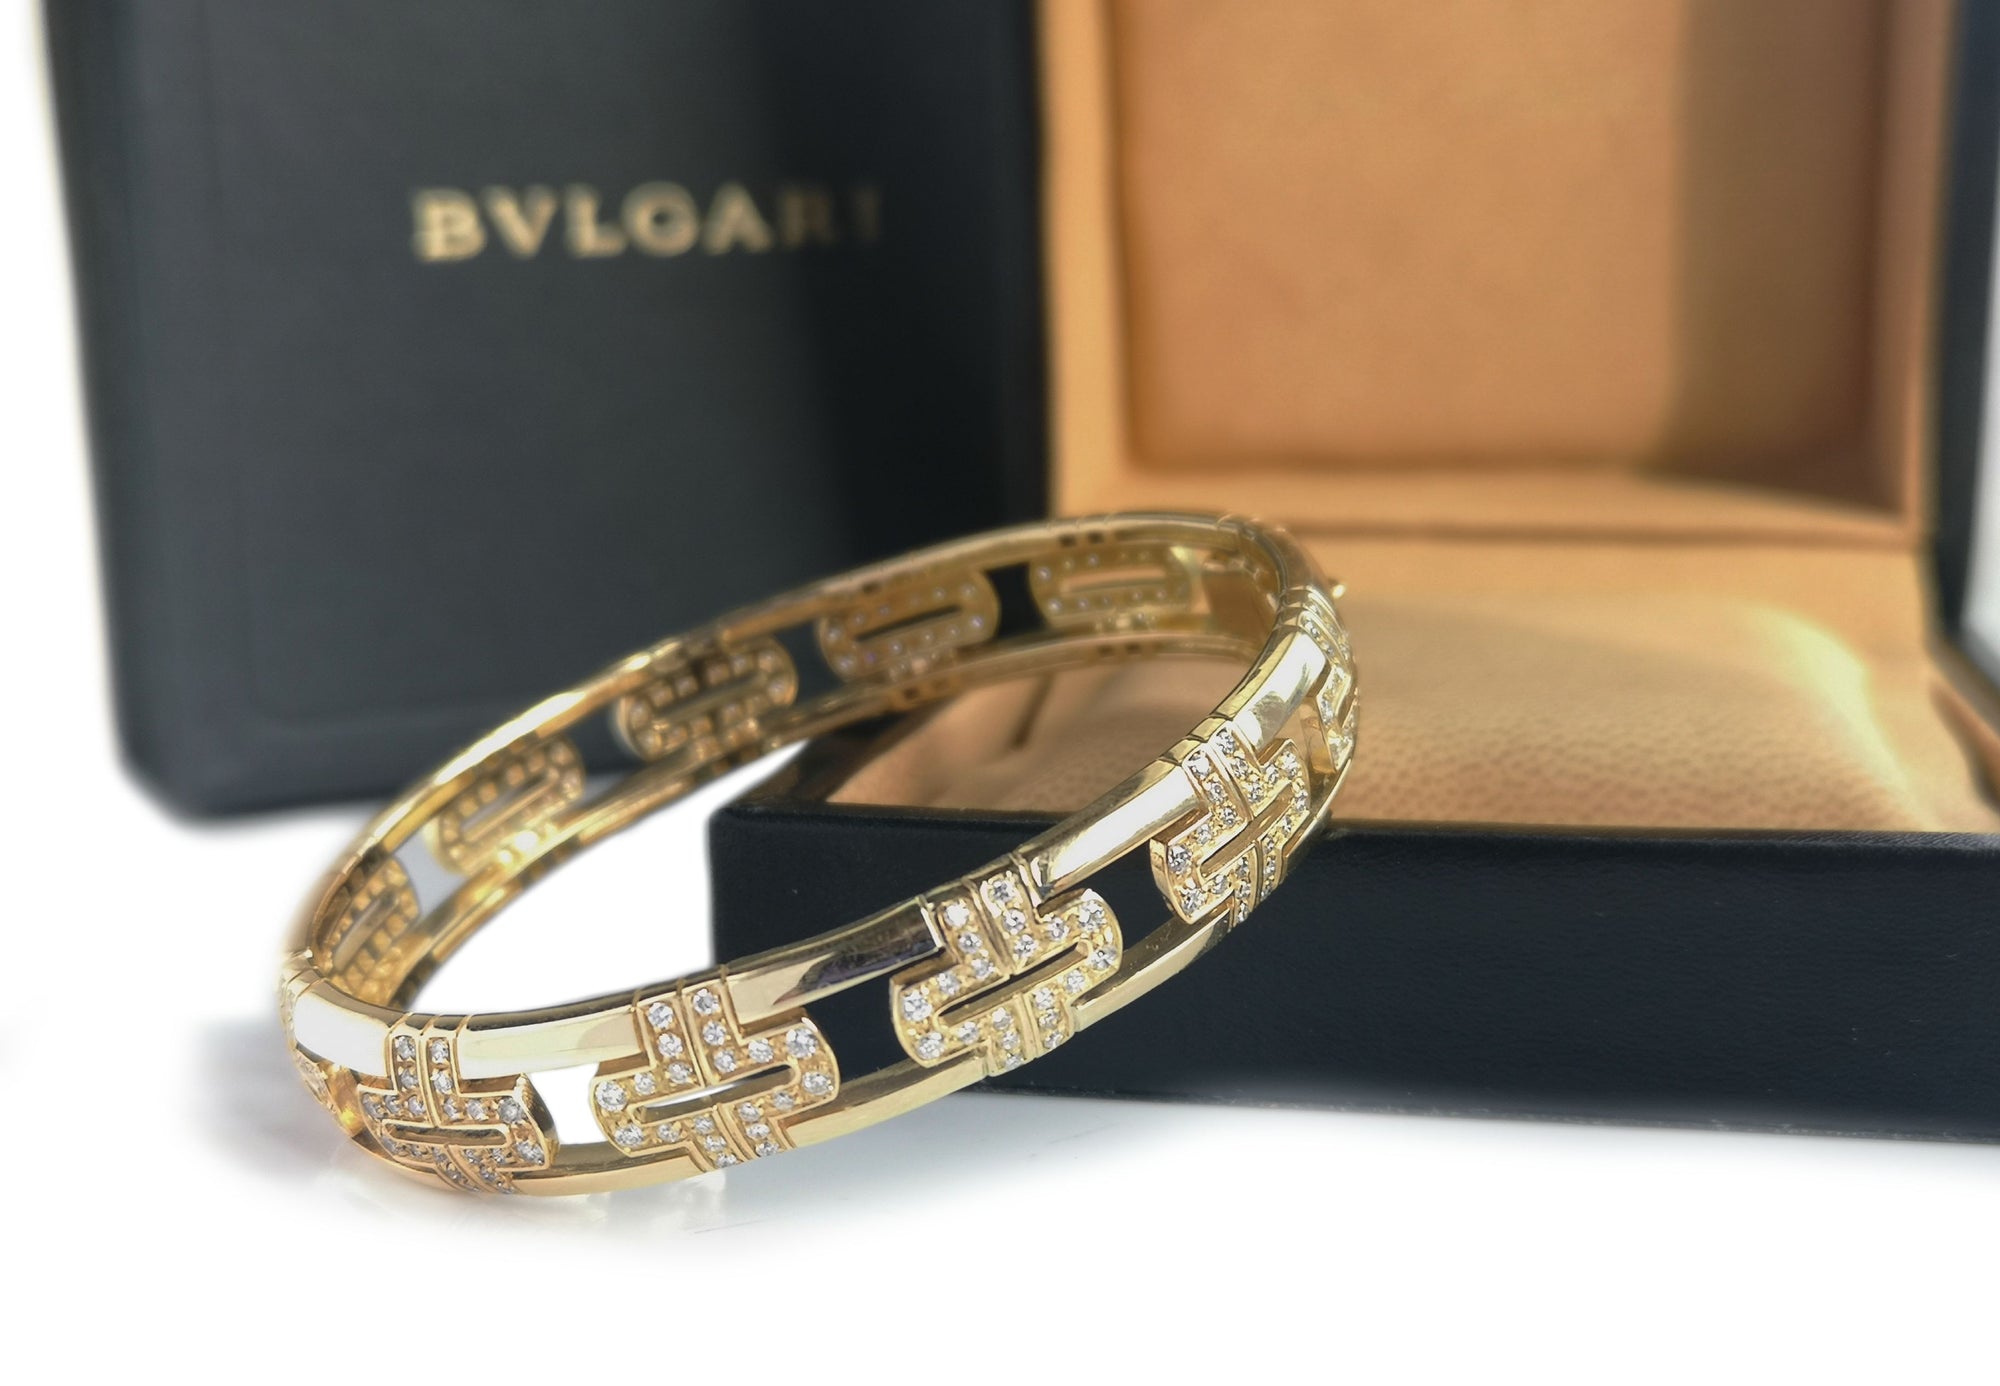 Bulgari Bvlgari Parentesi Bracelet with 1.90tcw Diamonds